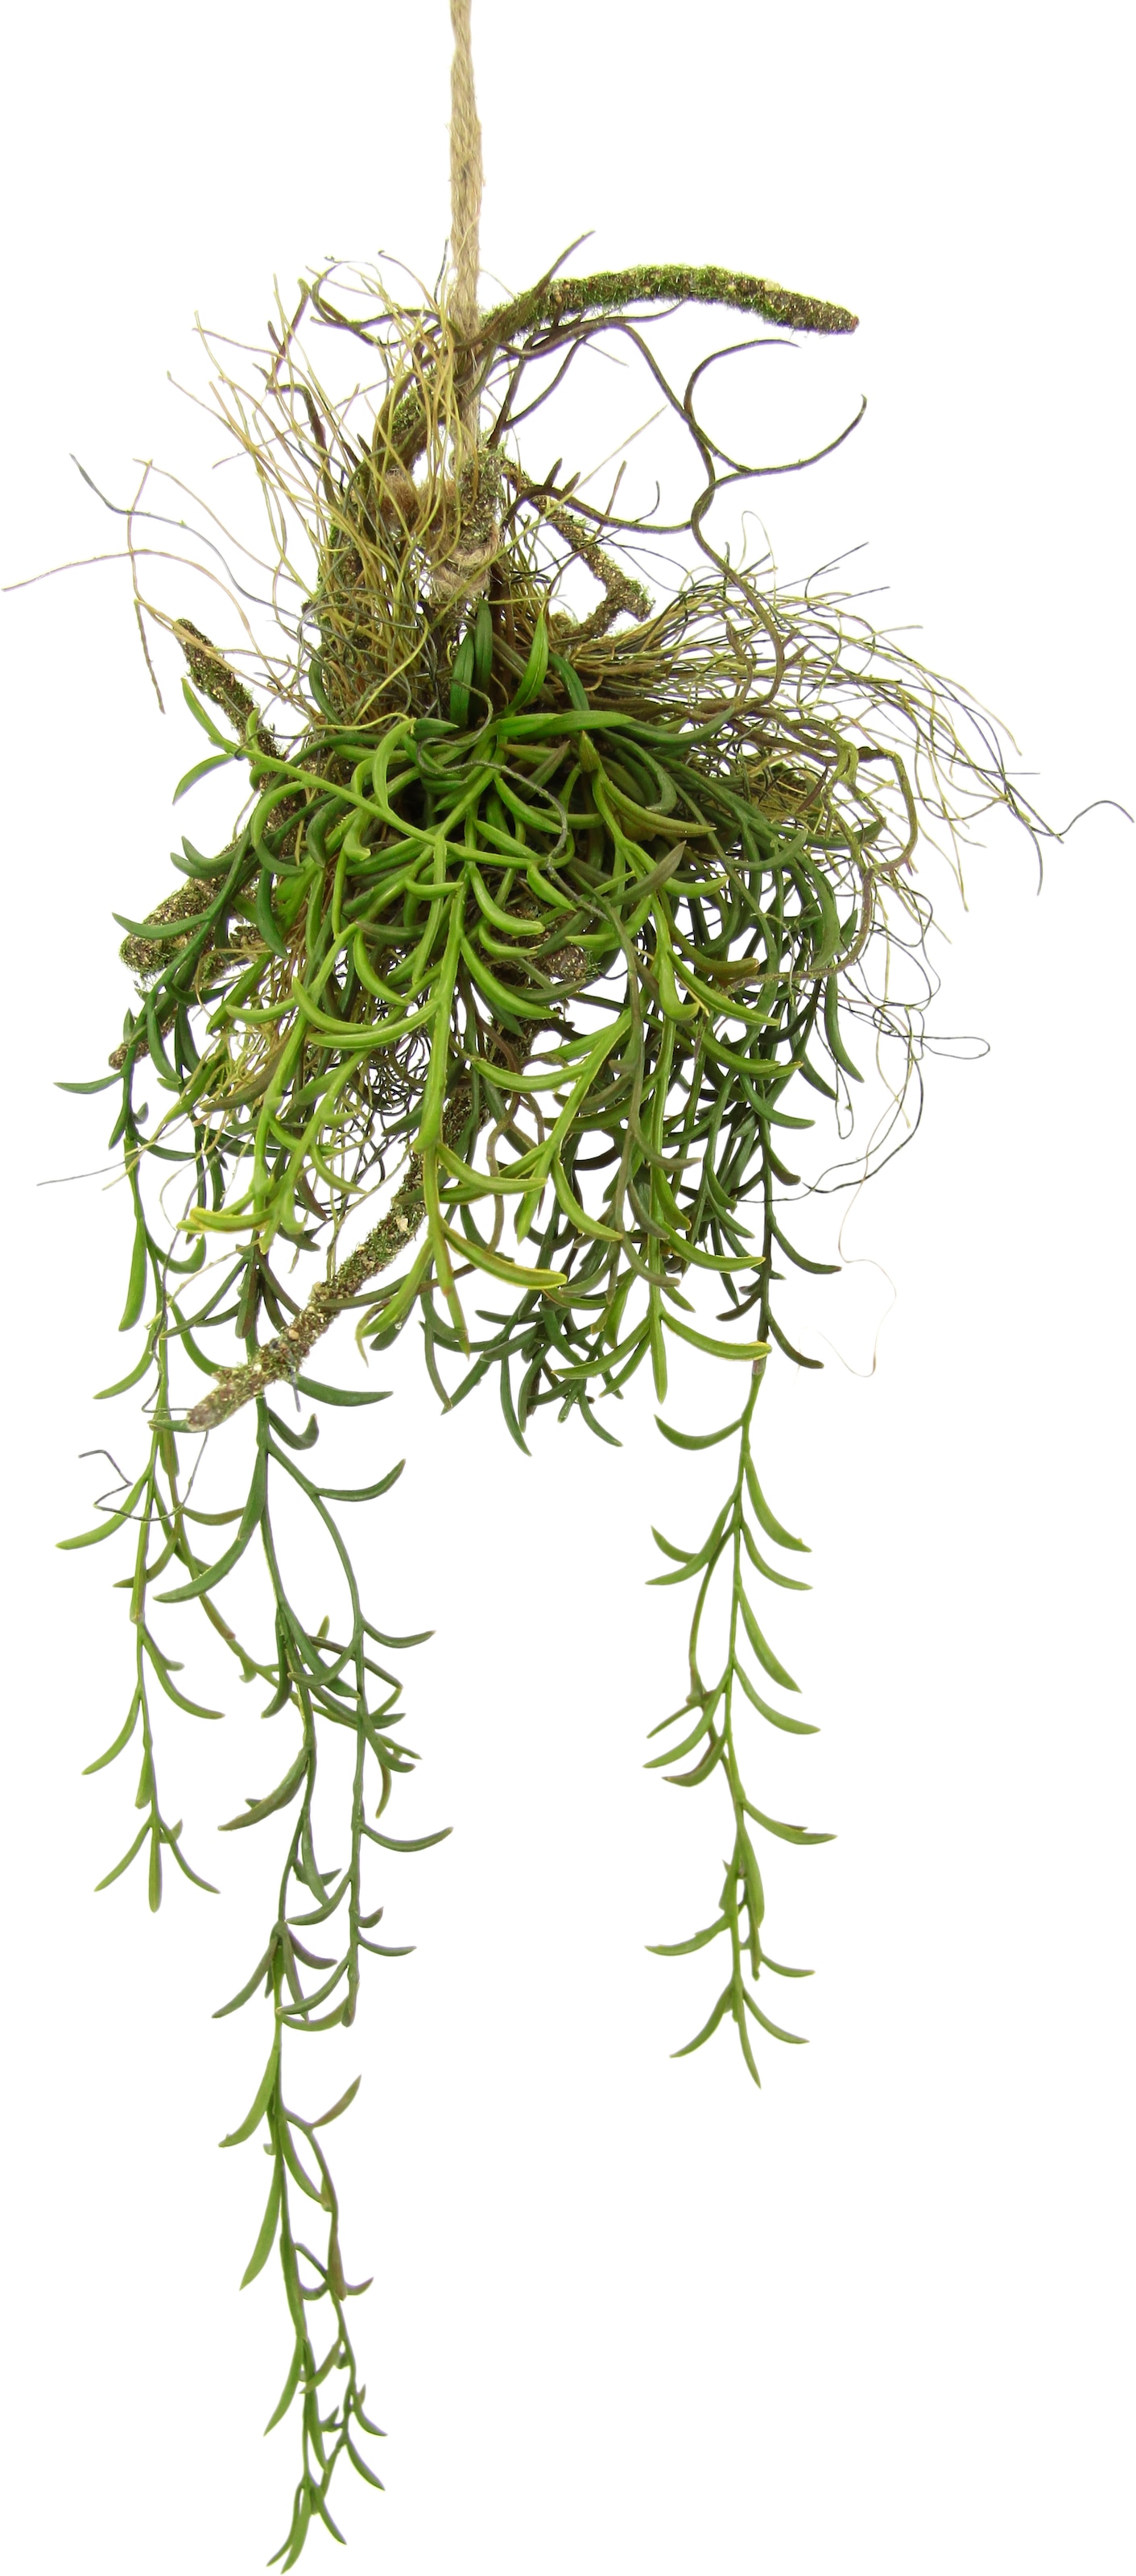 Rechnung auf Hänger kaufen »Tillandsia«, Kunstpflanze auf Moos I.GE.A. Hängeampel Künstlicher Kunstpflanze Ast